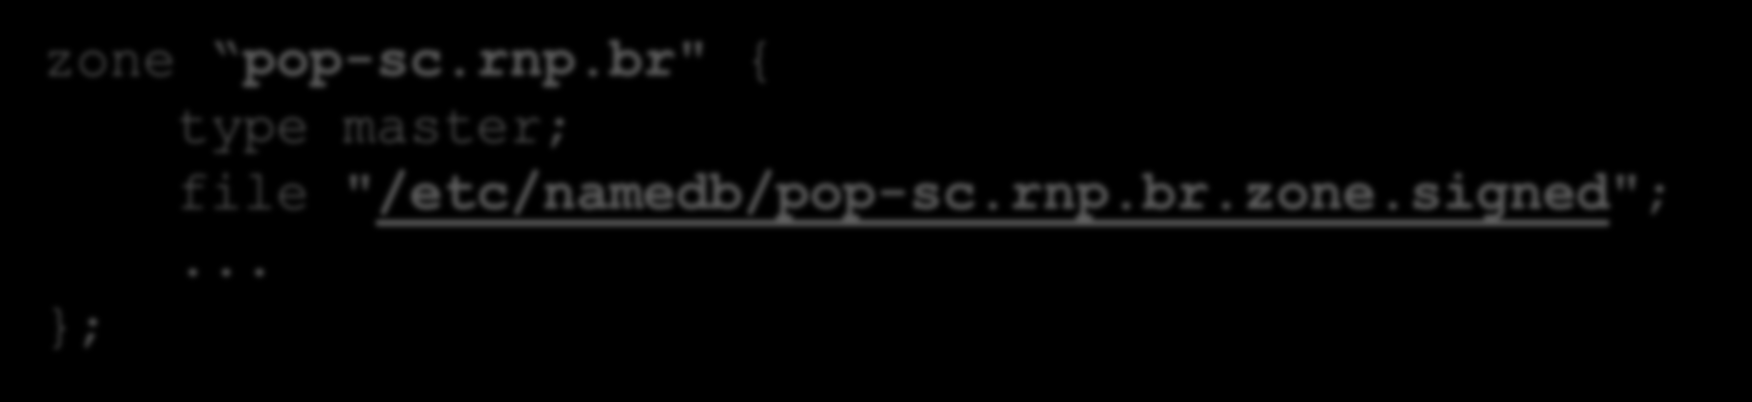 DNSSEC Servidor autoritativo com BIND9 (2) Ajuste do arquivo de zona no BIND zone pop-sc.rnp.